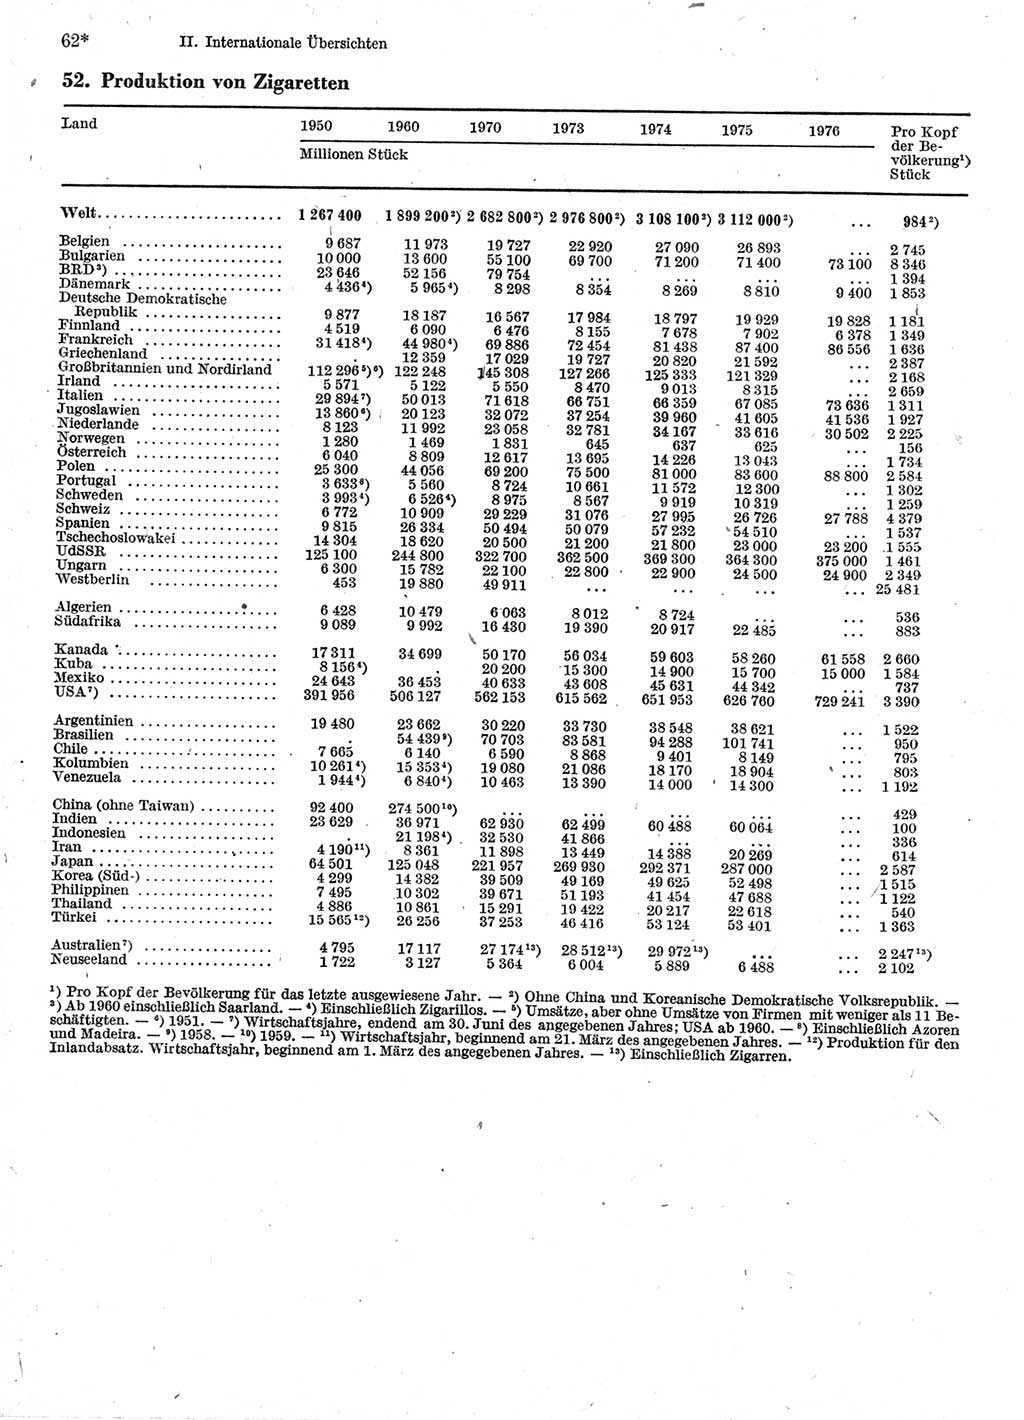 Statistisches Jahrbuch der Deutschen Demokratischen Republik (DDR) 1978, Seite 62 (Stat. Jb. DDR 1978, S. 62)